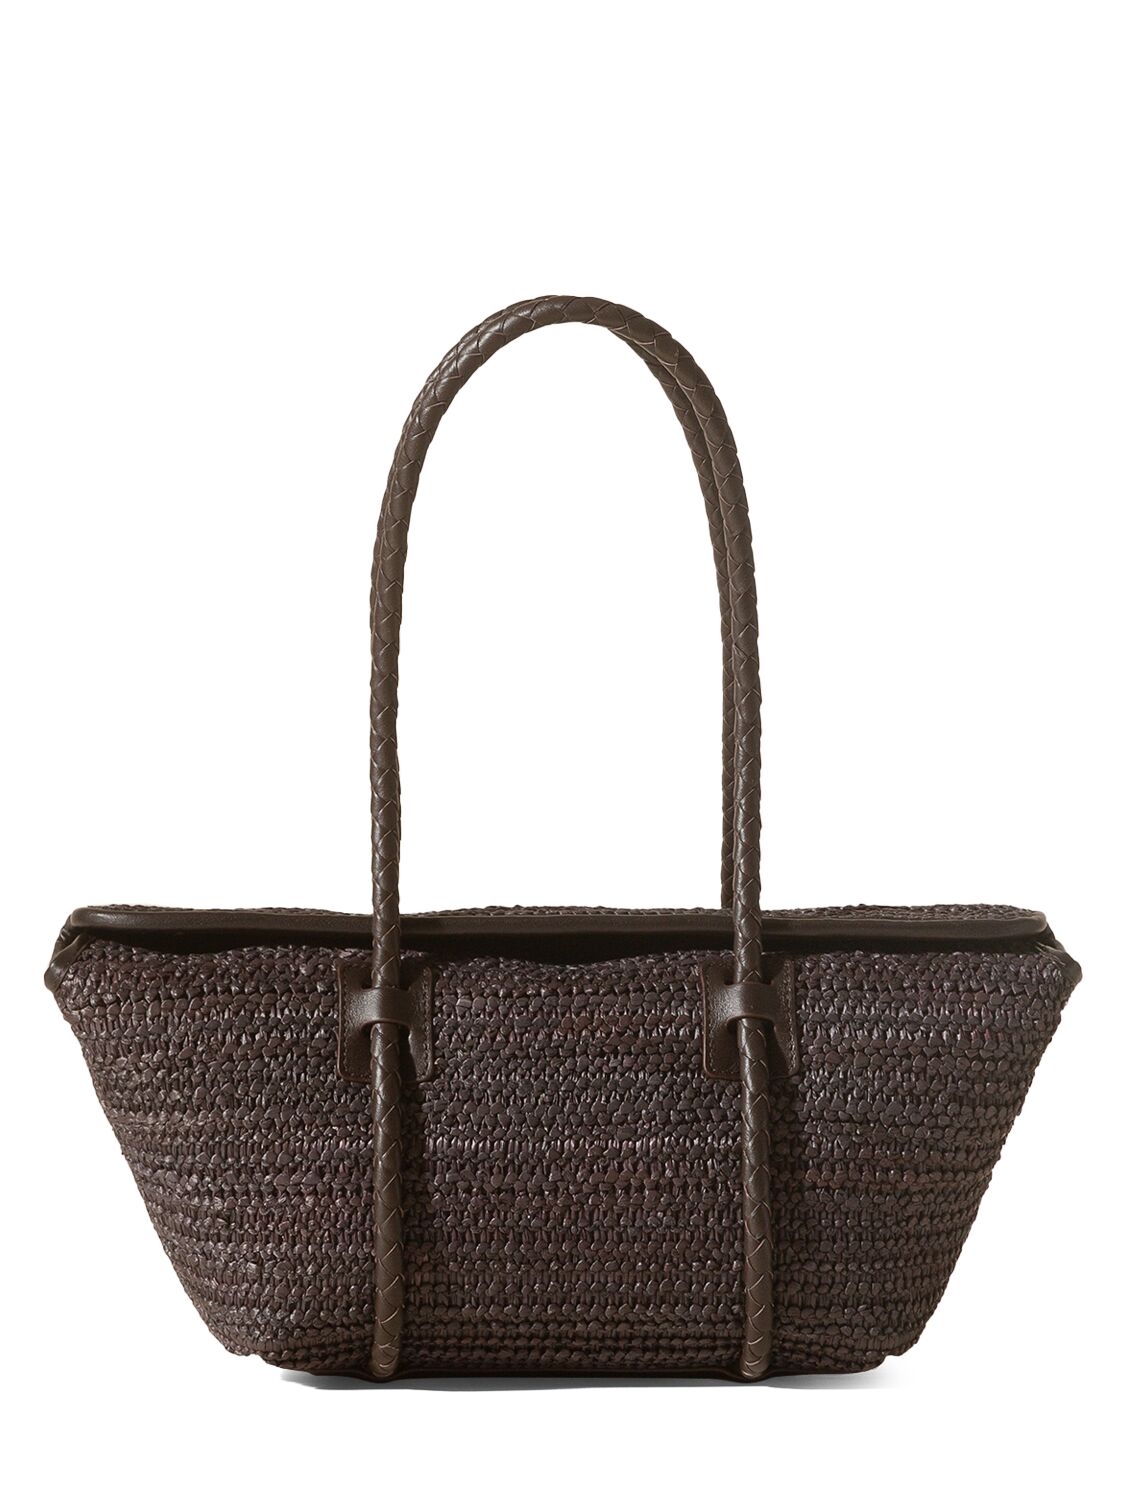 Image of Forna Raffia & Leather Shoulder Bag